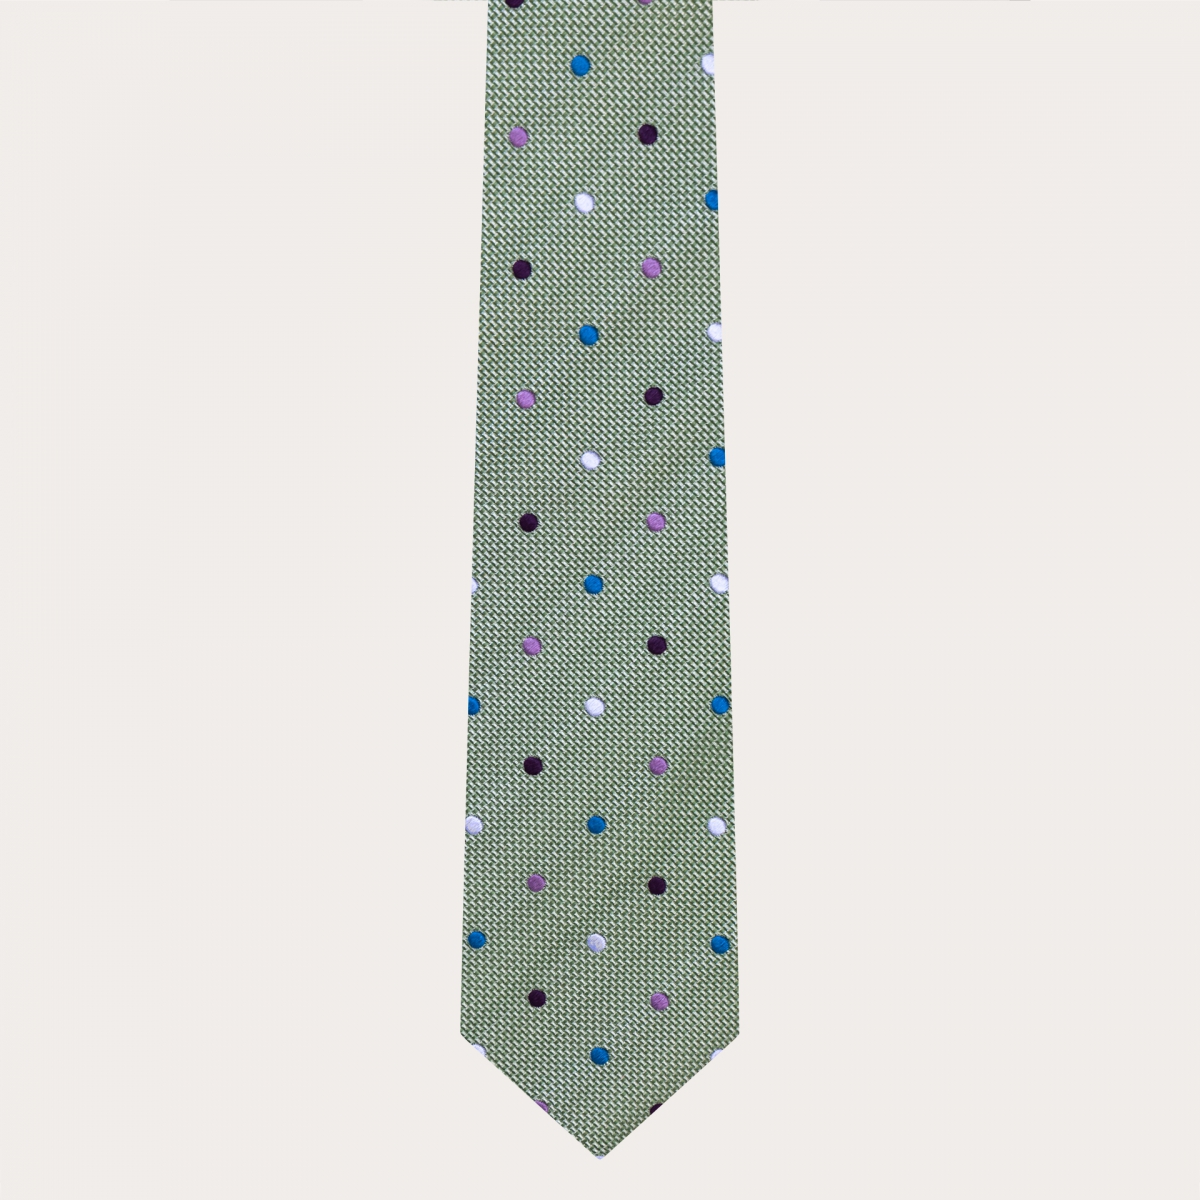 Raffinierte Krawatte aus Jacquard-Seide, grün mit mehrfarbigen Tupfen